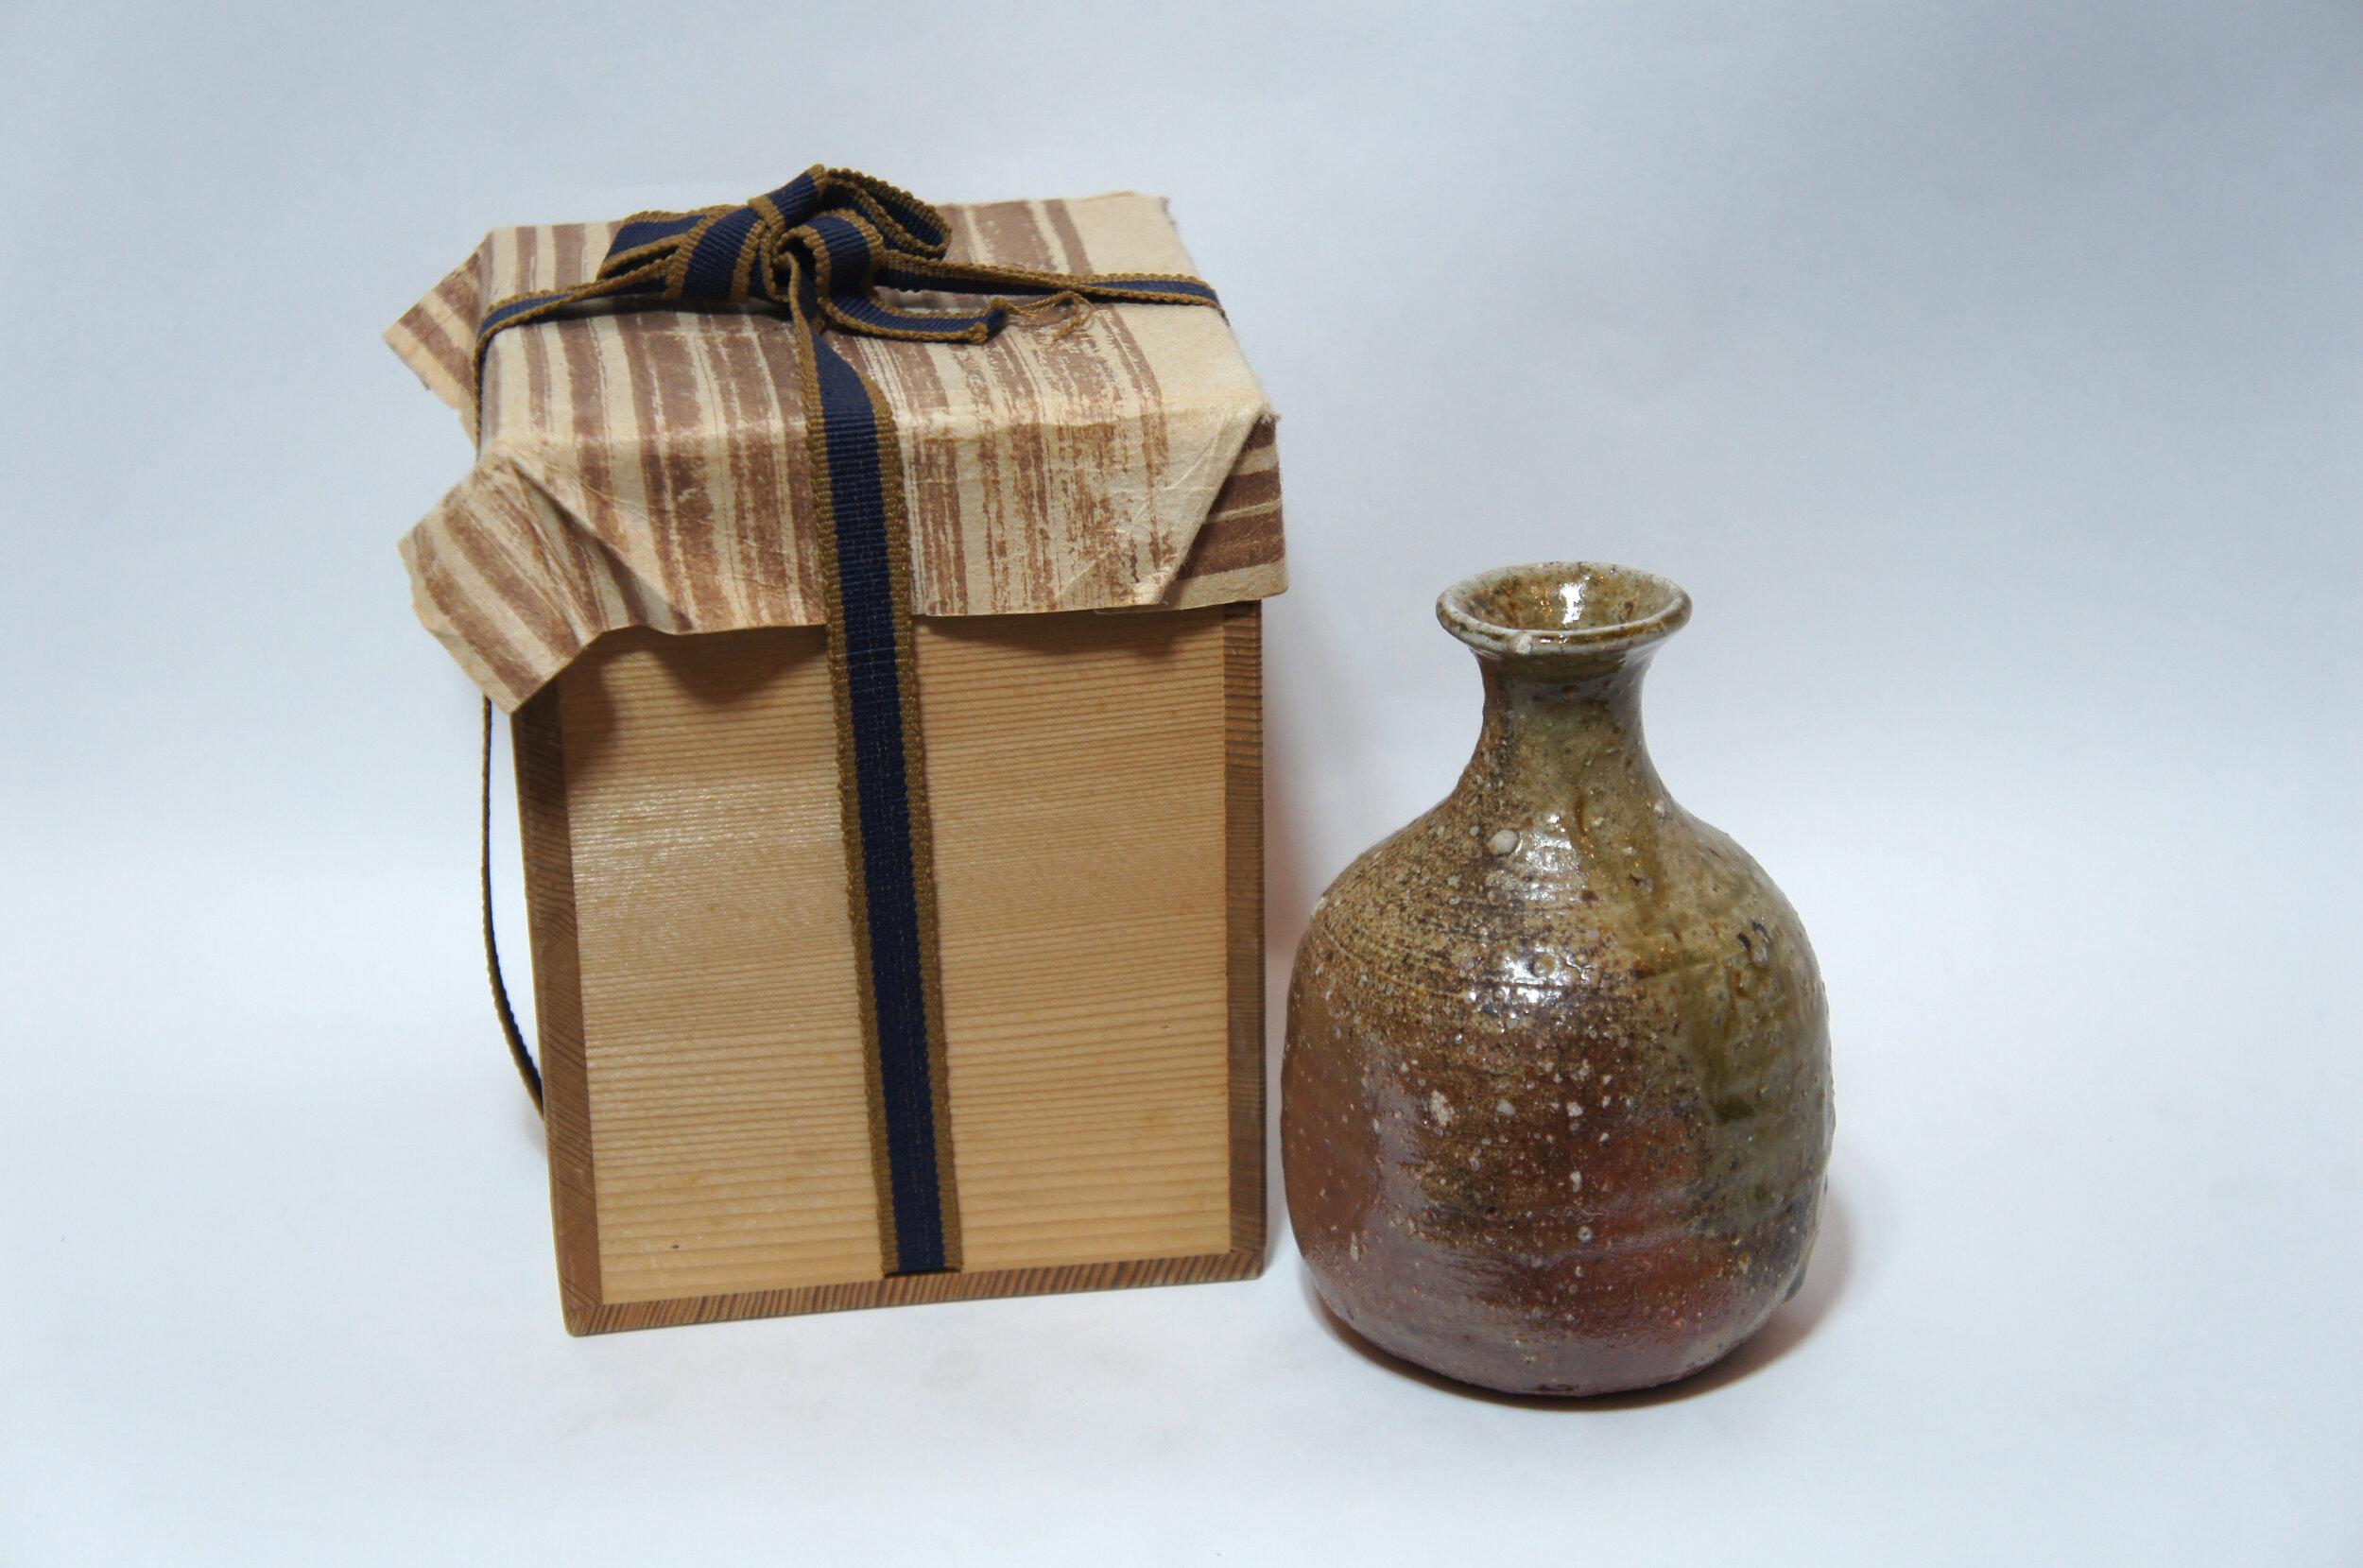 Il s'agit d'une bouteille de saké 'Tokkuri' fabriqué dans le style Shigaraki (Shigaraki ware).
Elle a été fabriquée dans les années 1930, à l'ère Showa, et est en porcelaine.

Dimensions : 8,5 × 9 × H13 cm

La céramique de Shigaraki est un type de